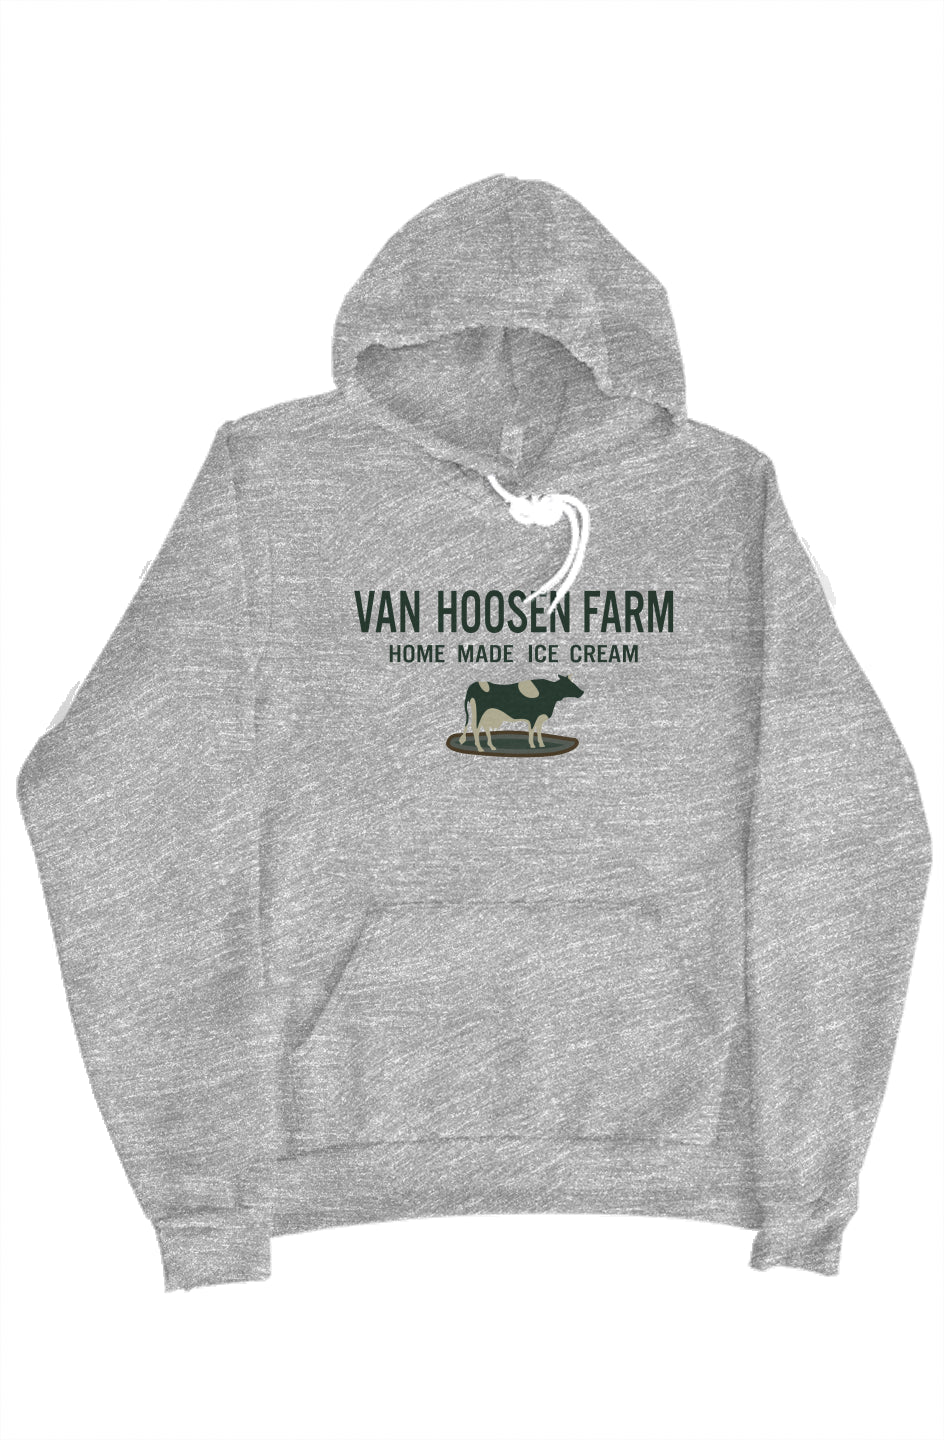 Van Hoosen Farm Hoodie_FINAL